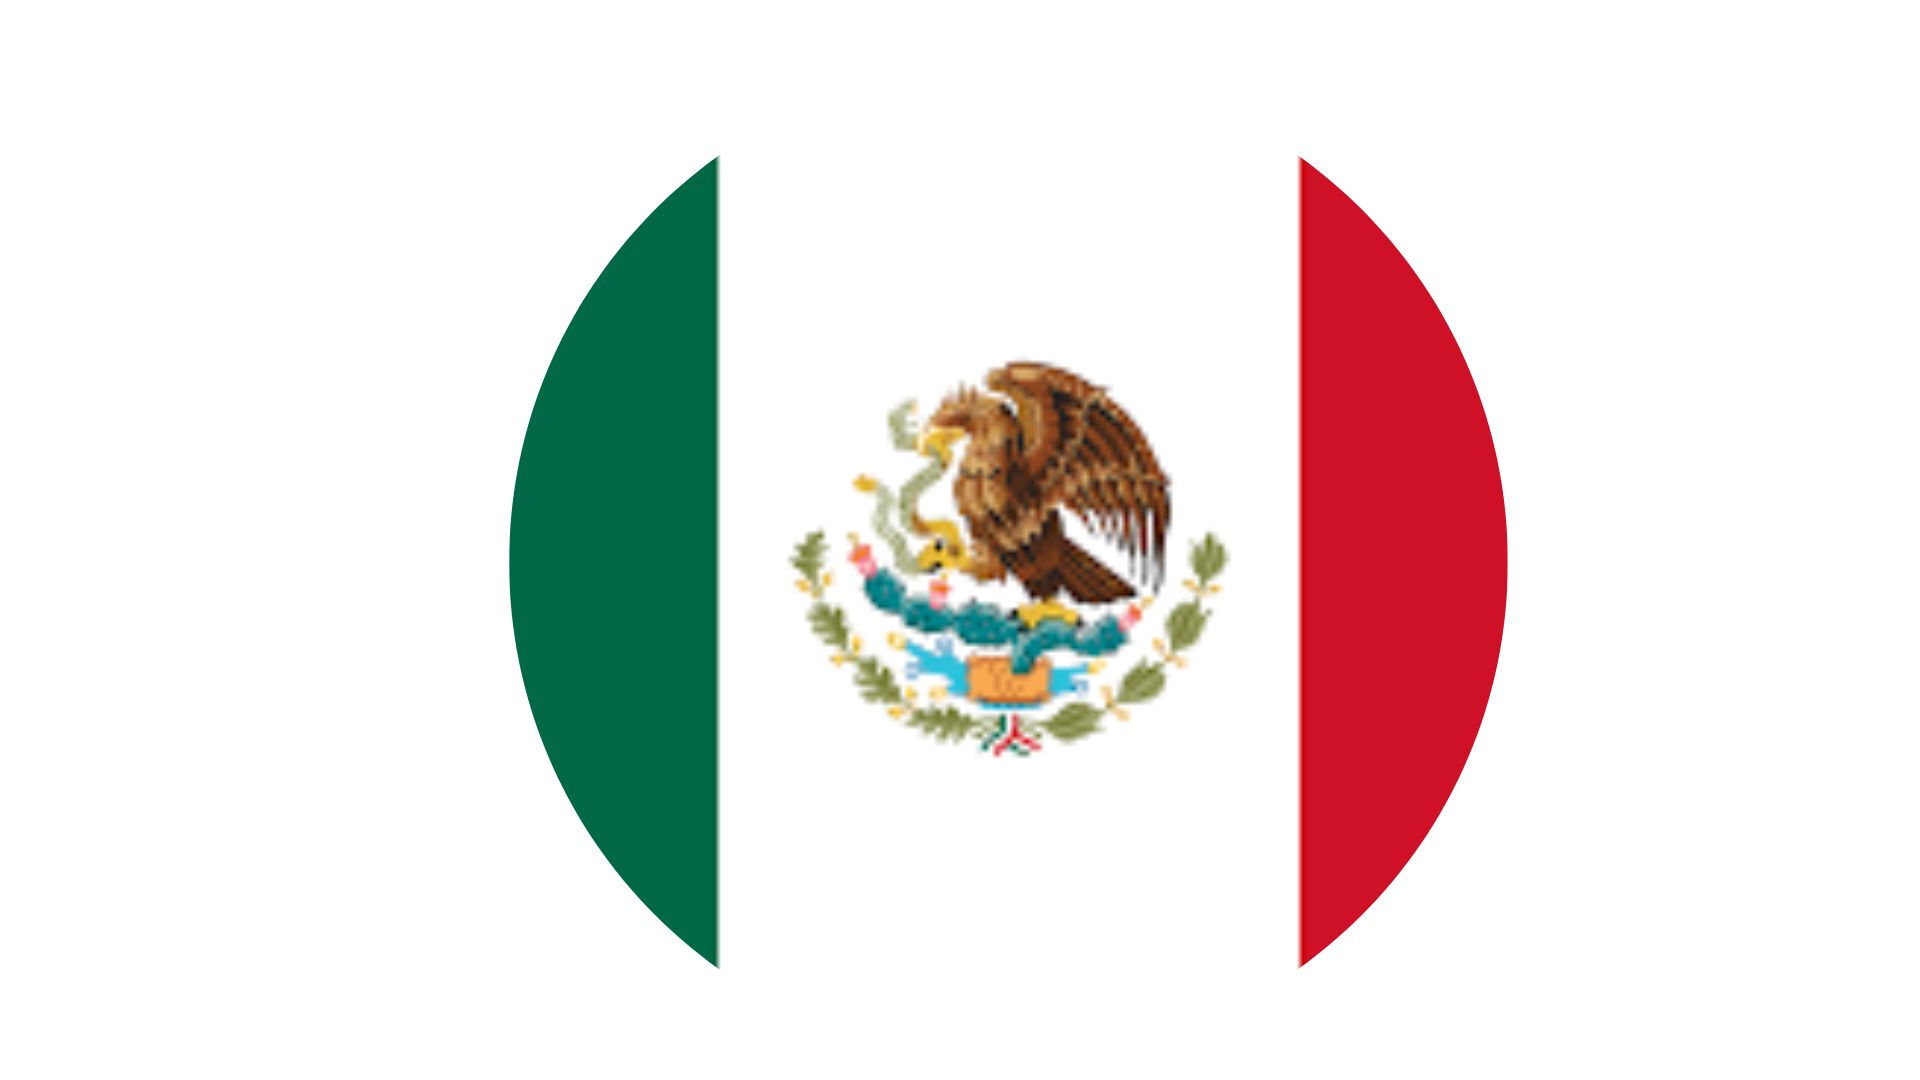 Maxico flag